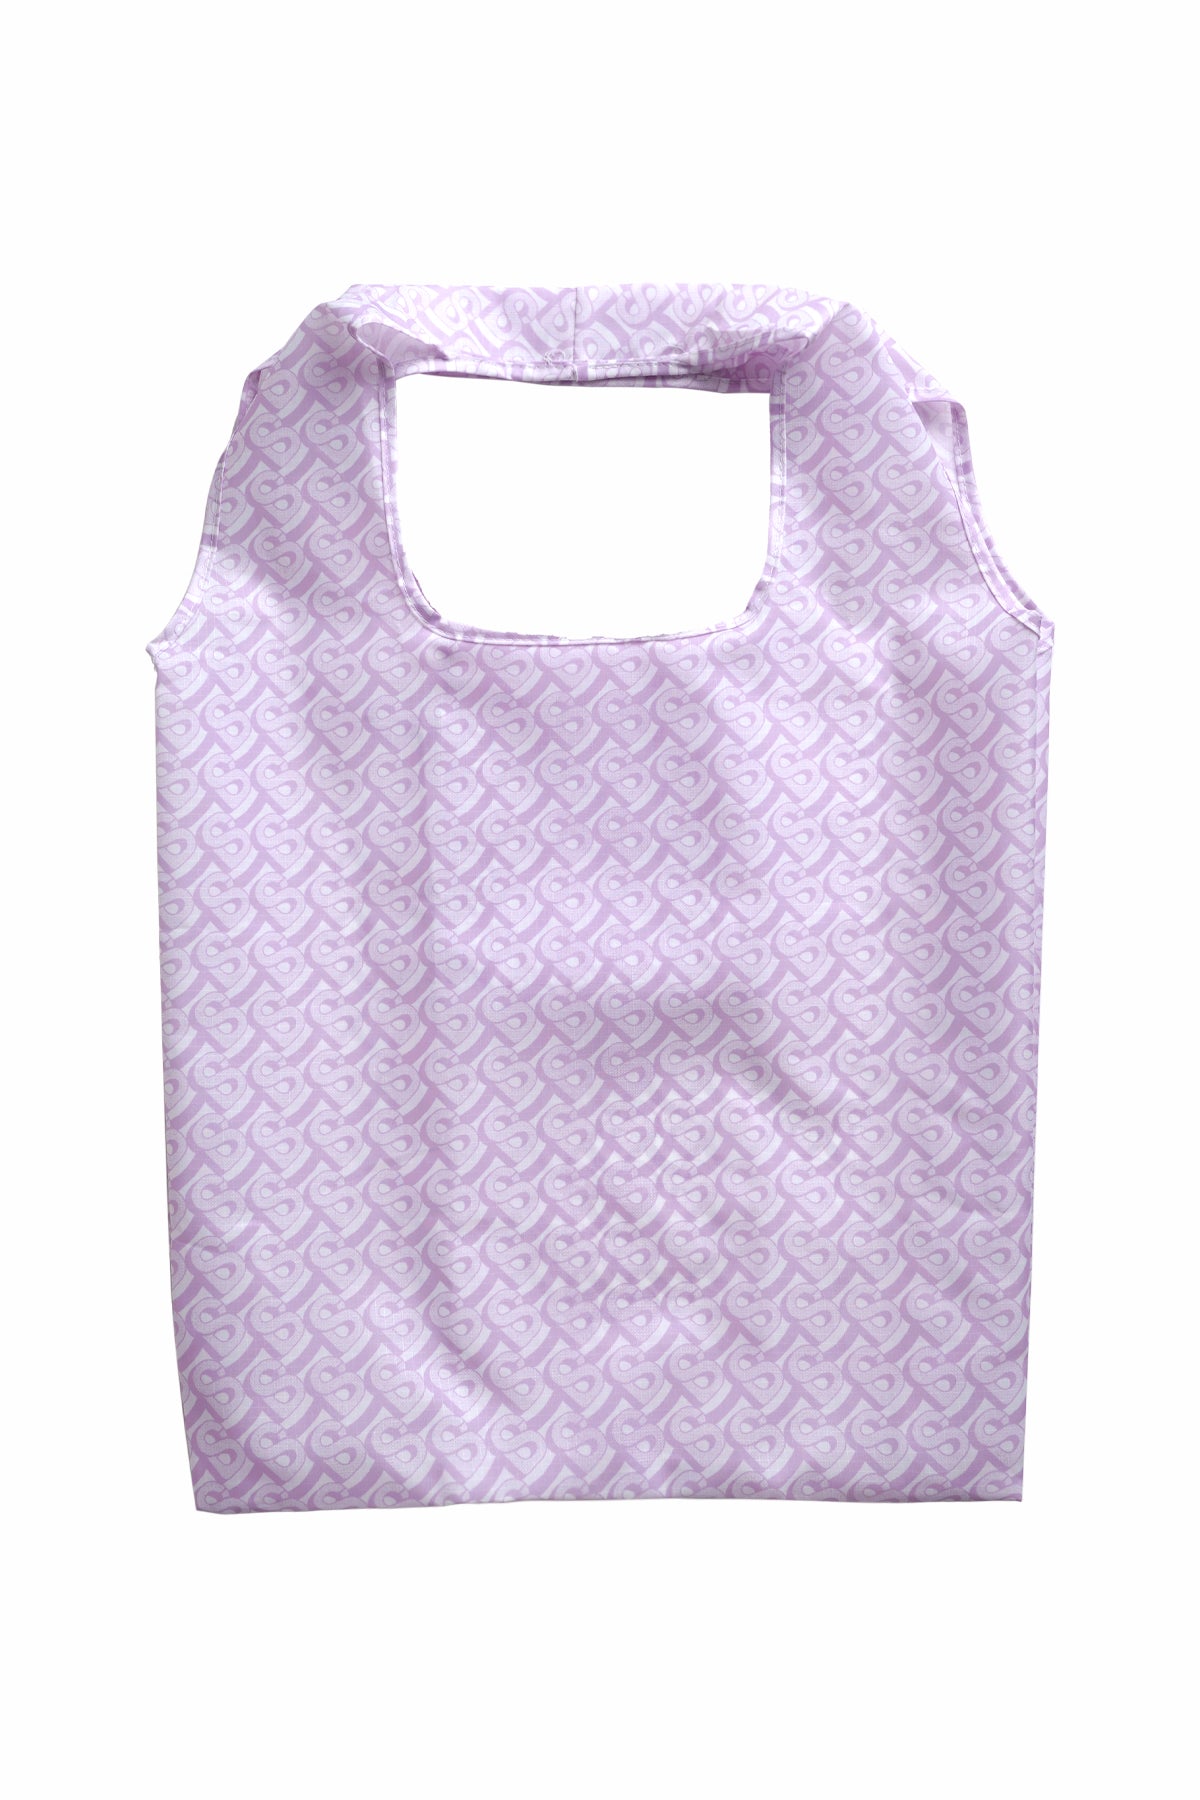 Bimu Foldable Bag - Orchid Hush